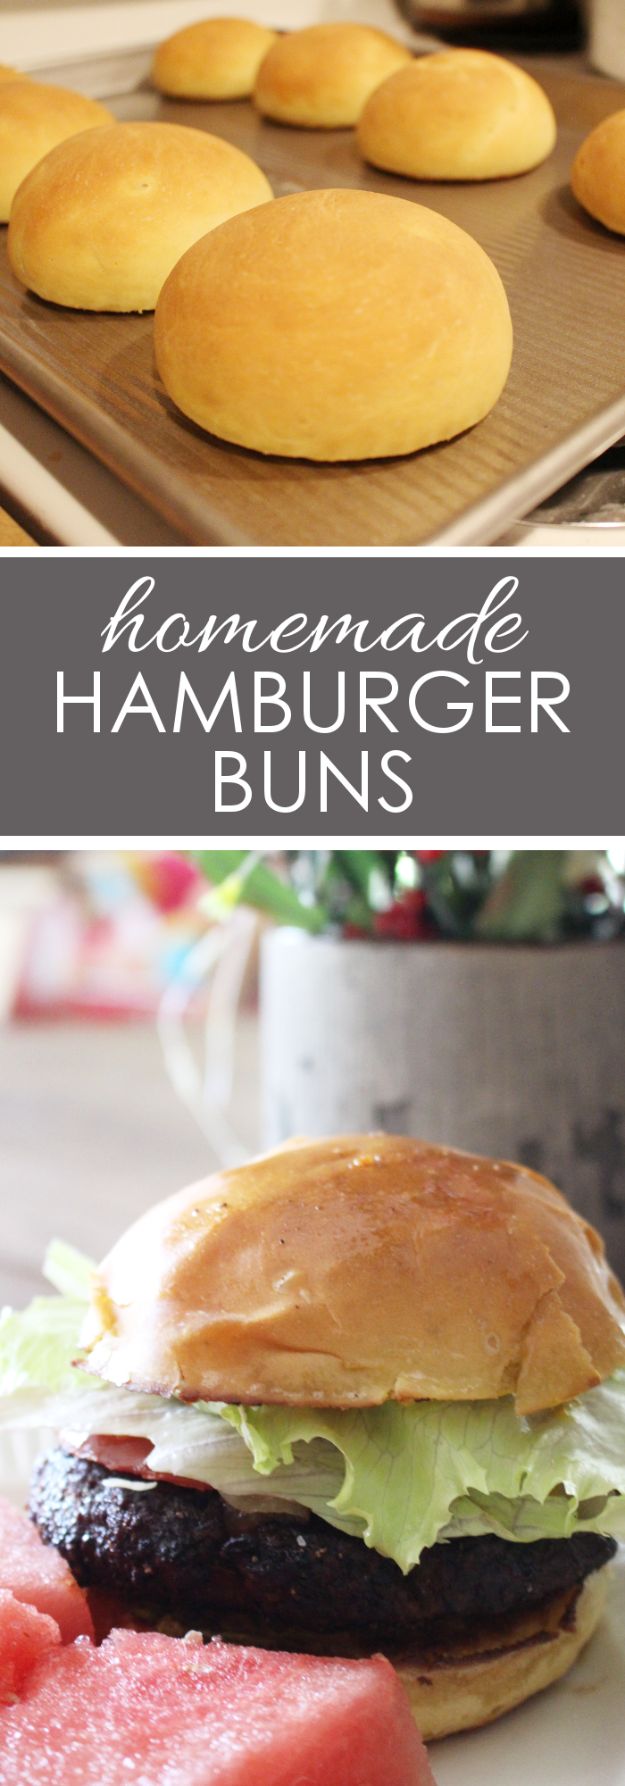 How to Make Homemade Hamburger Buns